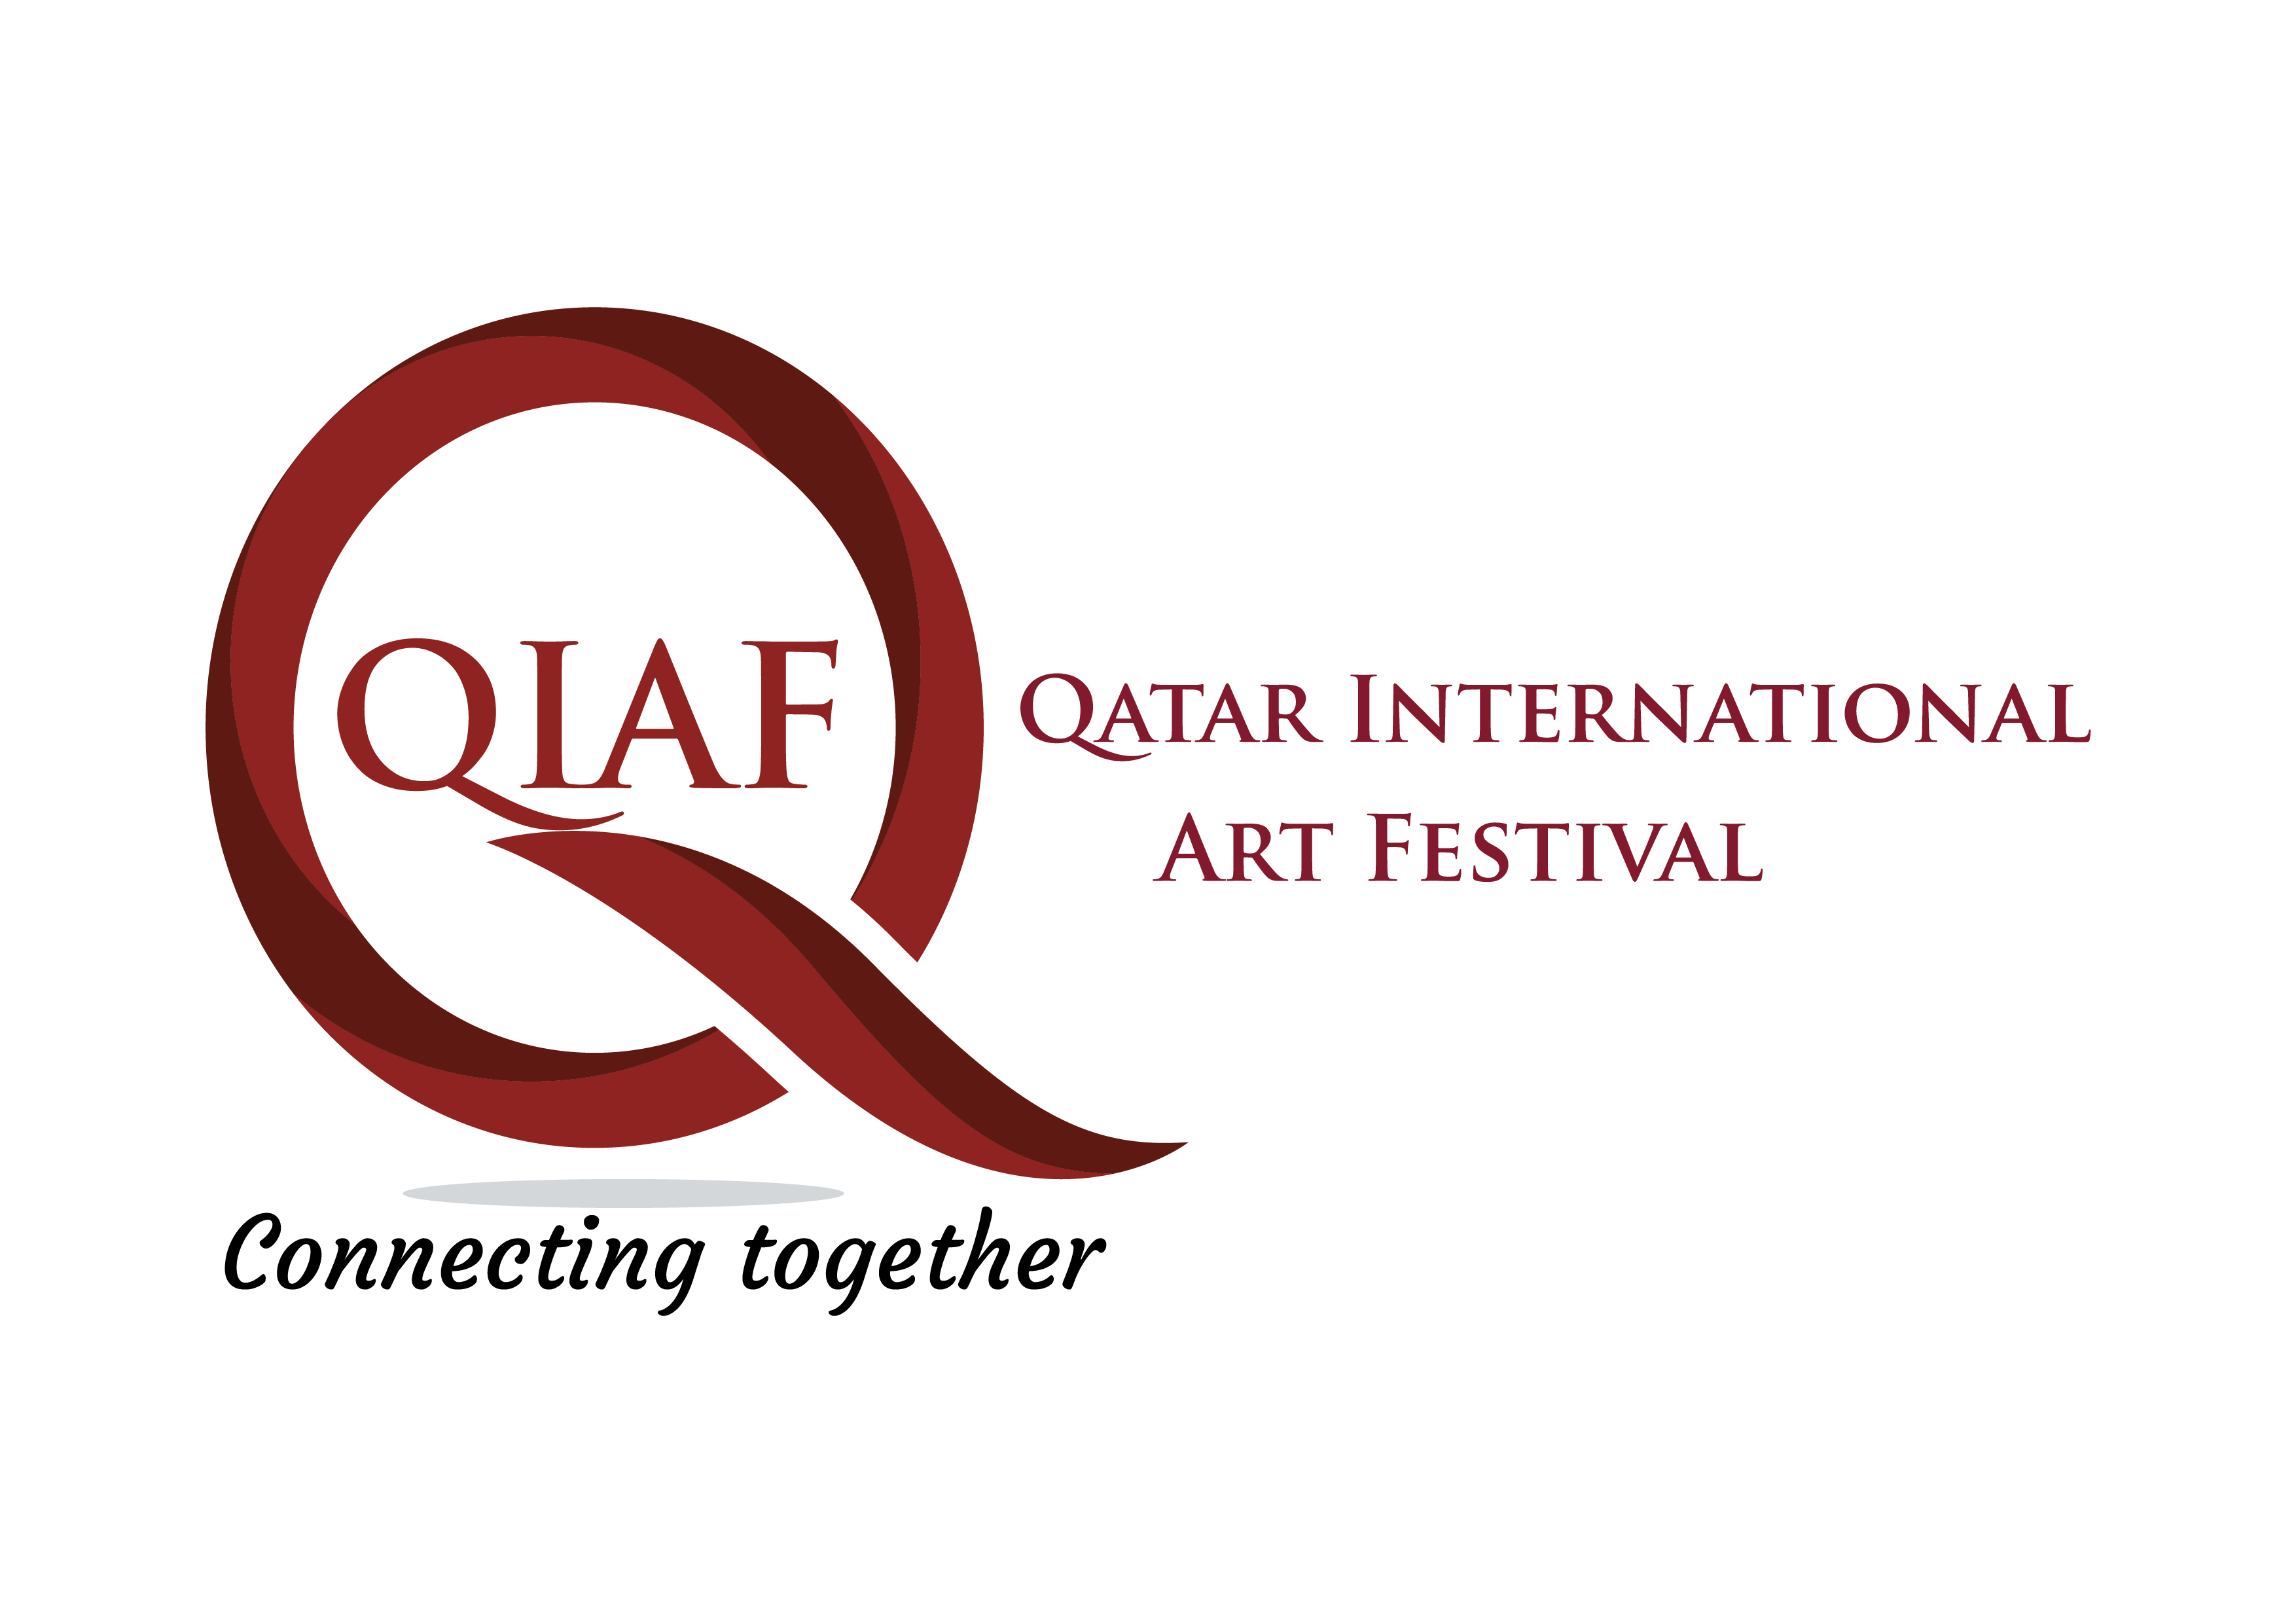 QIAF INTERNATIONAL ART FESTIVAL